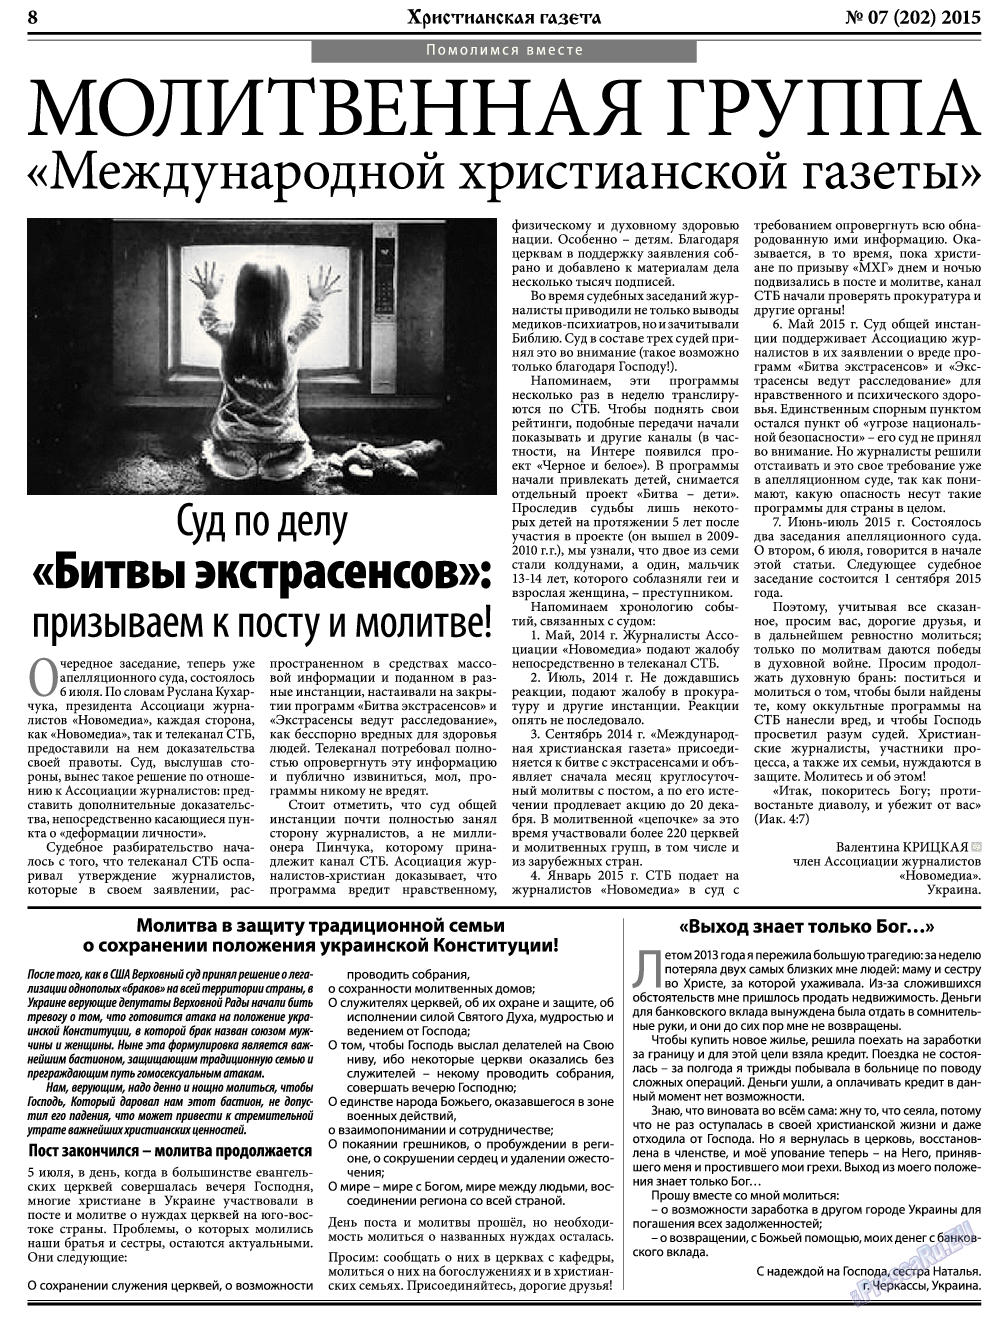 Христианская газета, газета. 2015 №7 стр.8